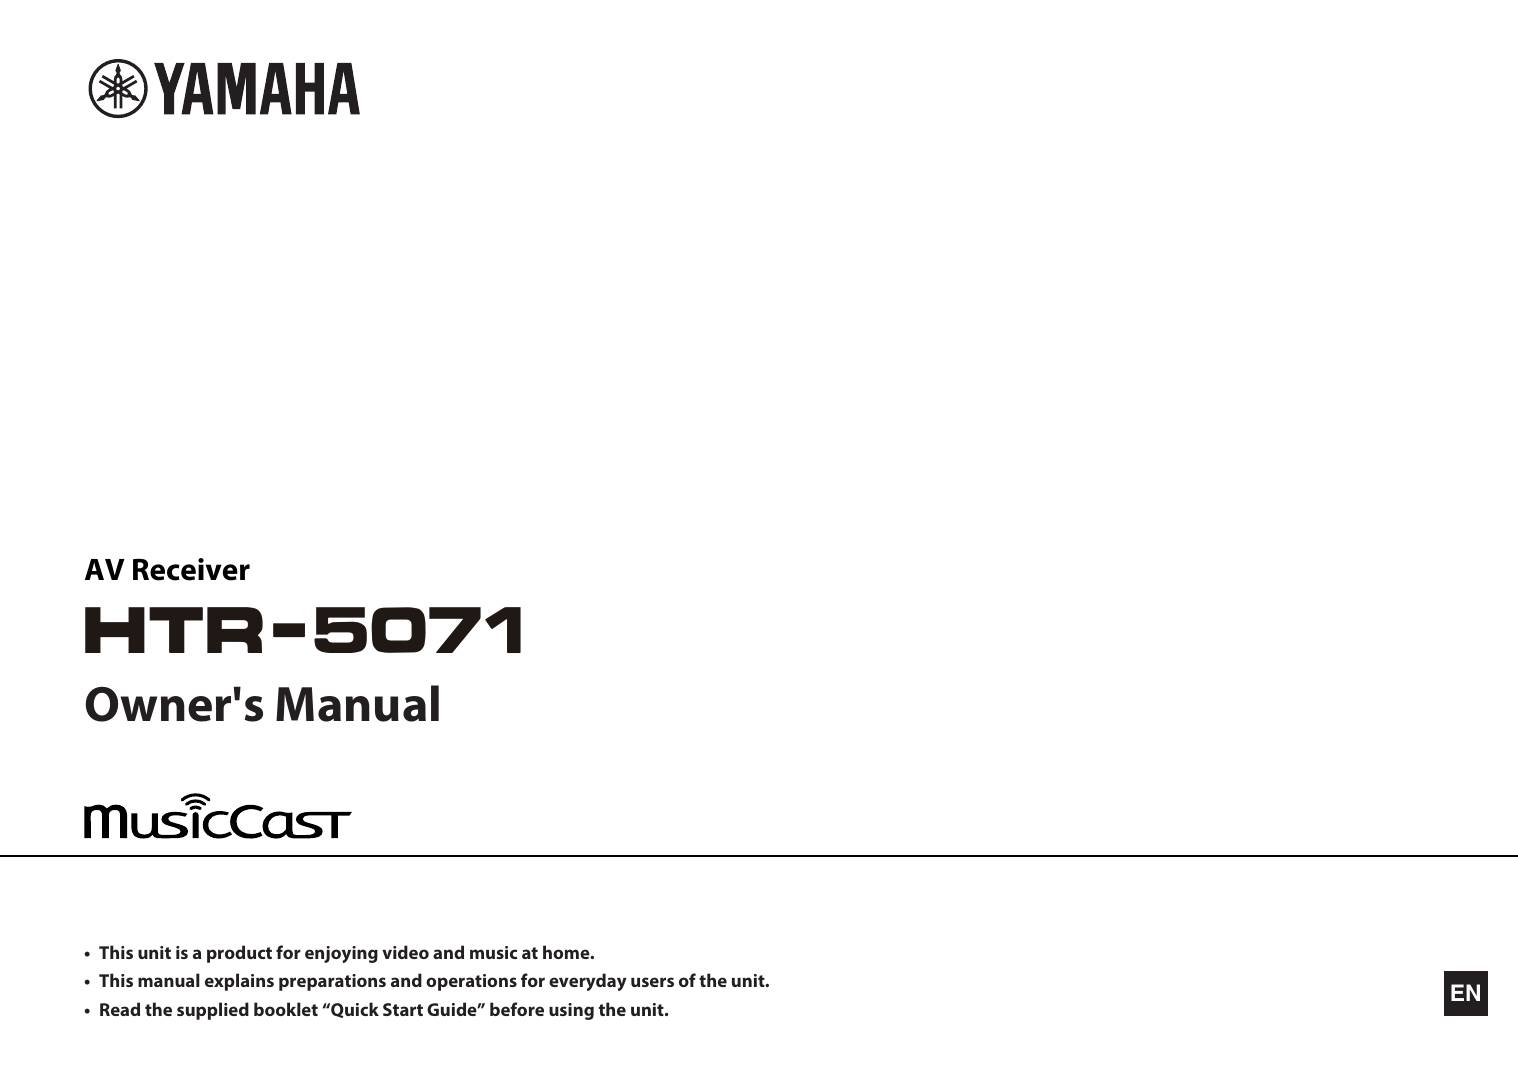 Yamaha HTR-5071